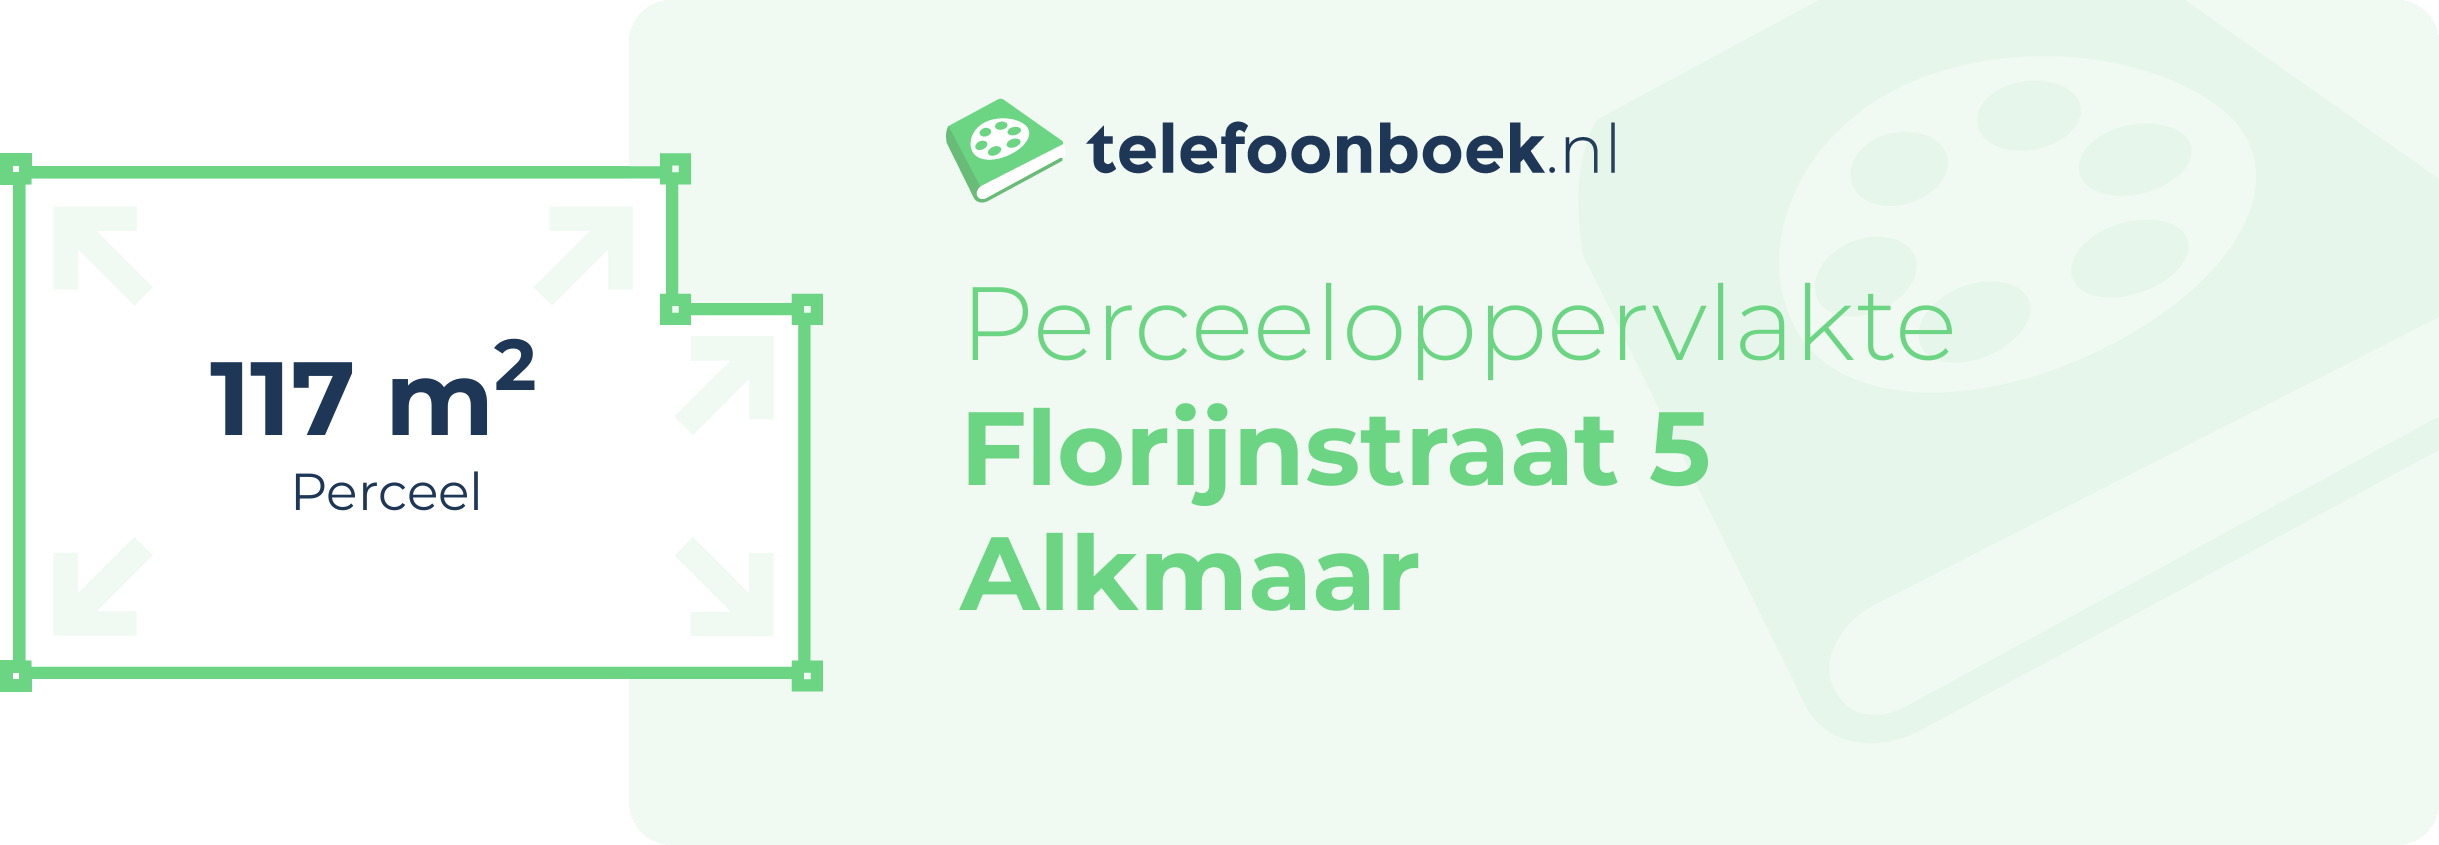 Perceeloppervlakte Florijnstraat 5 Alkmaar